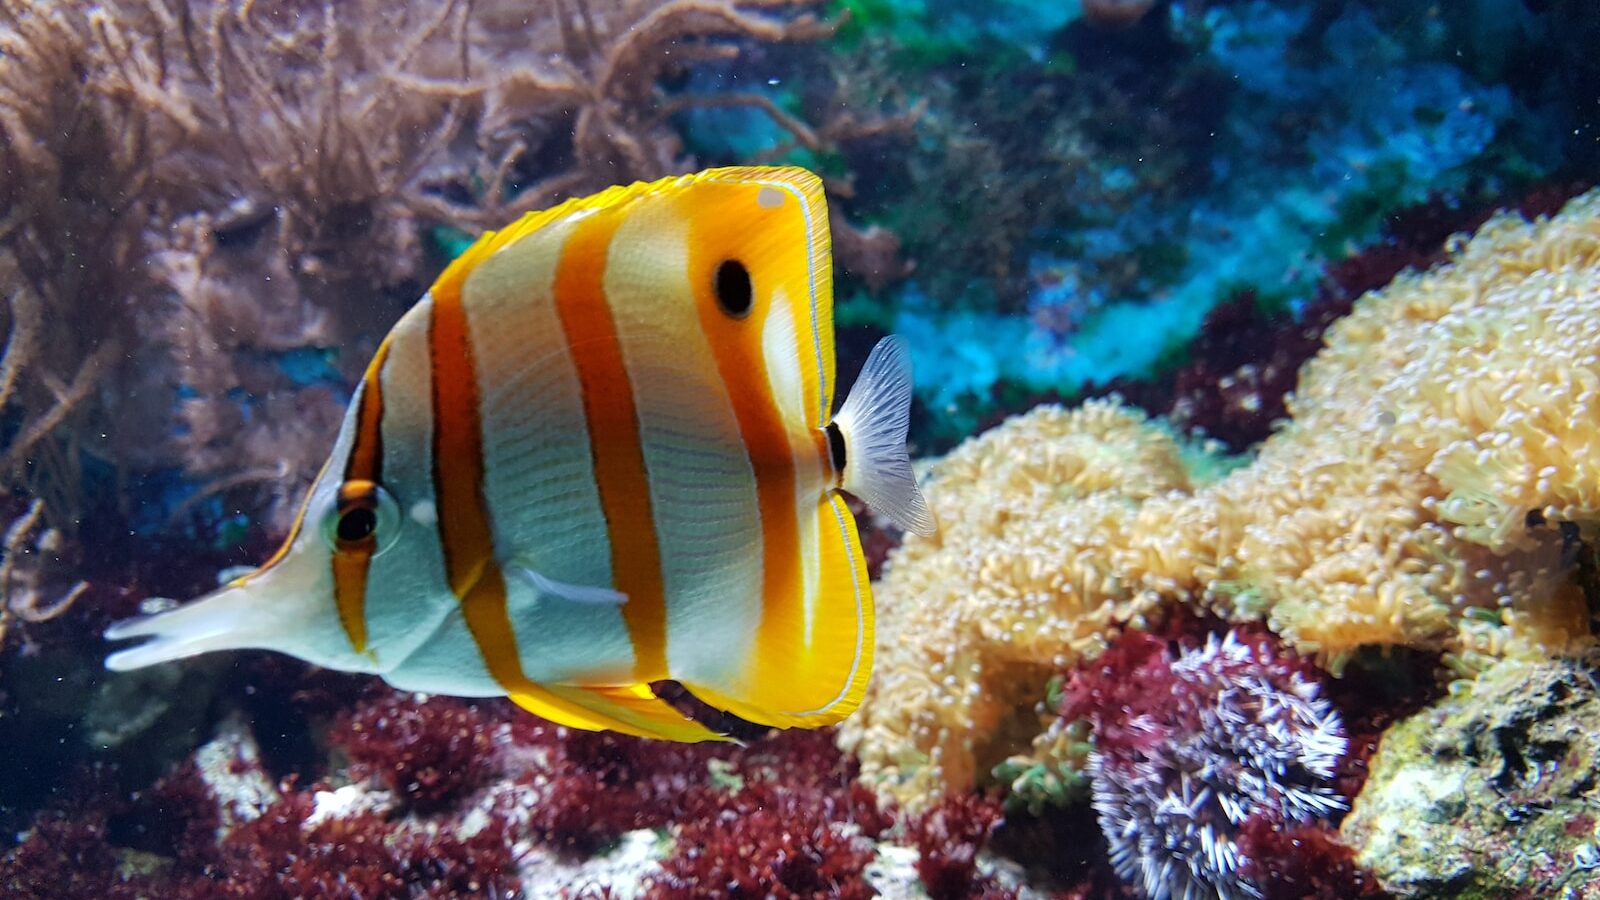 yellow and white fish underwater photography